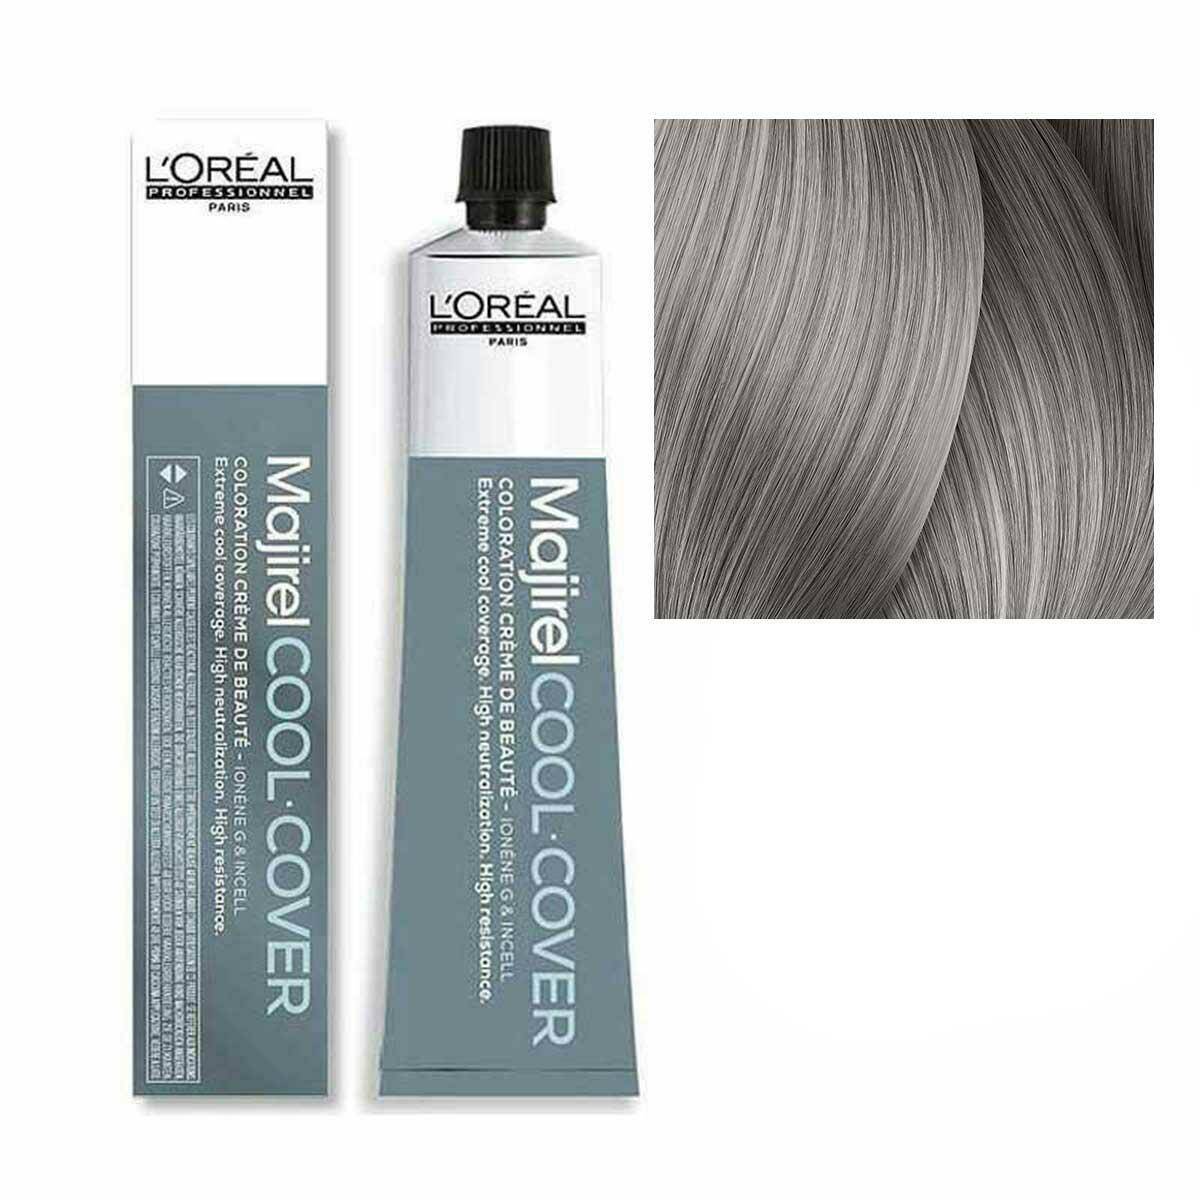 Loreal Majirel Cool Cover Farba do włosów - 9.11 Bardzo jasny blond popielaty głęboki, chłodne odcienie 50ml